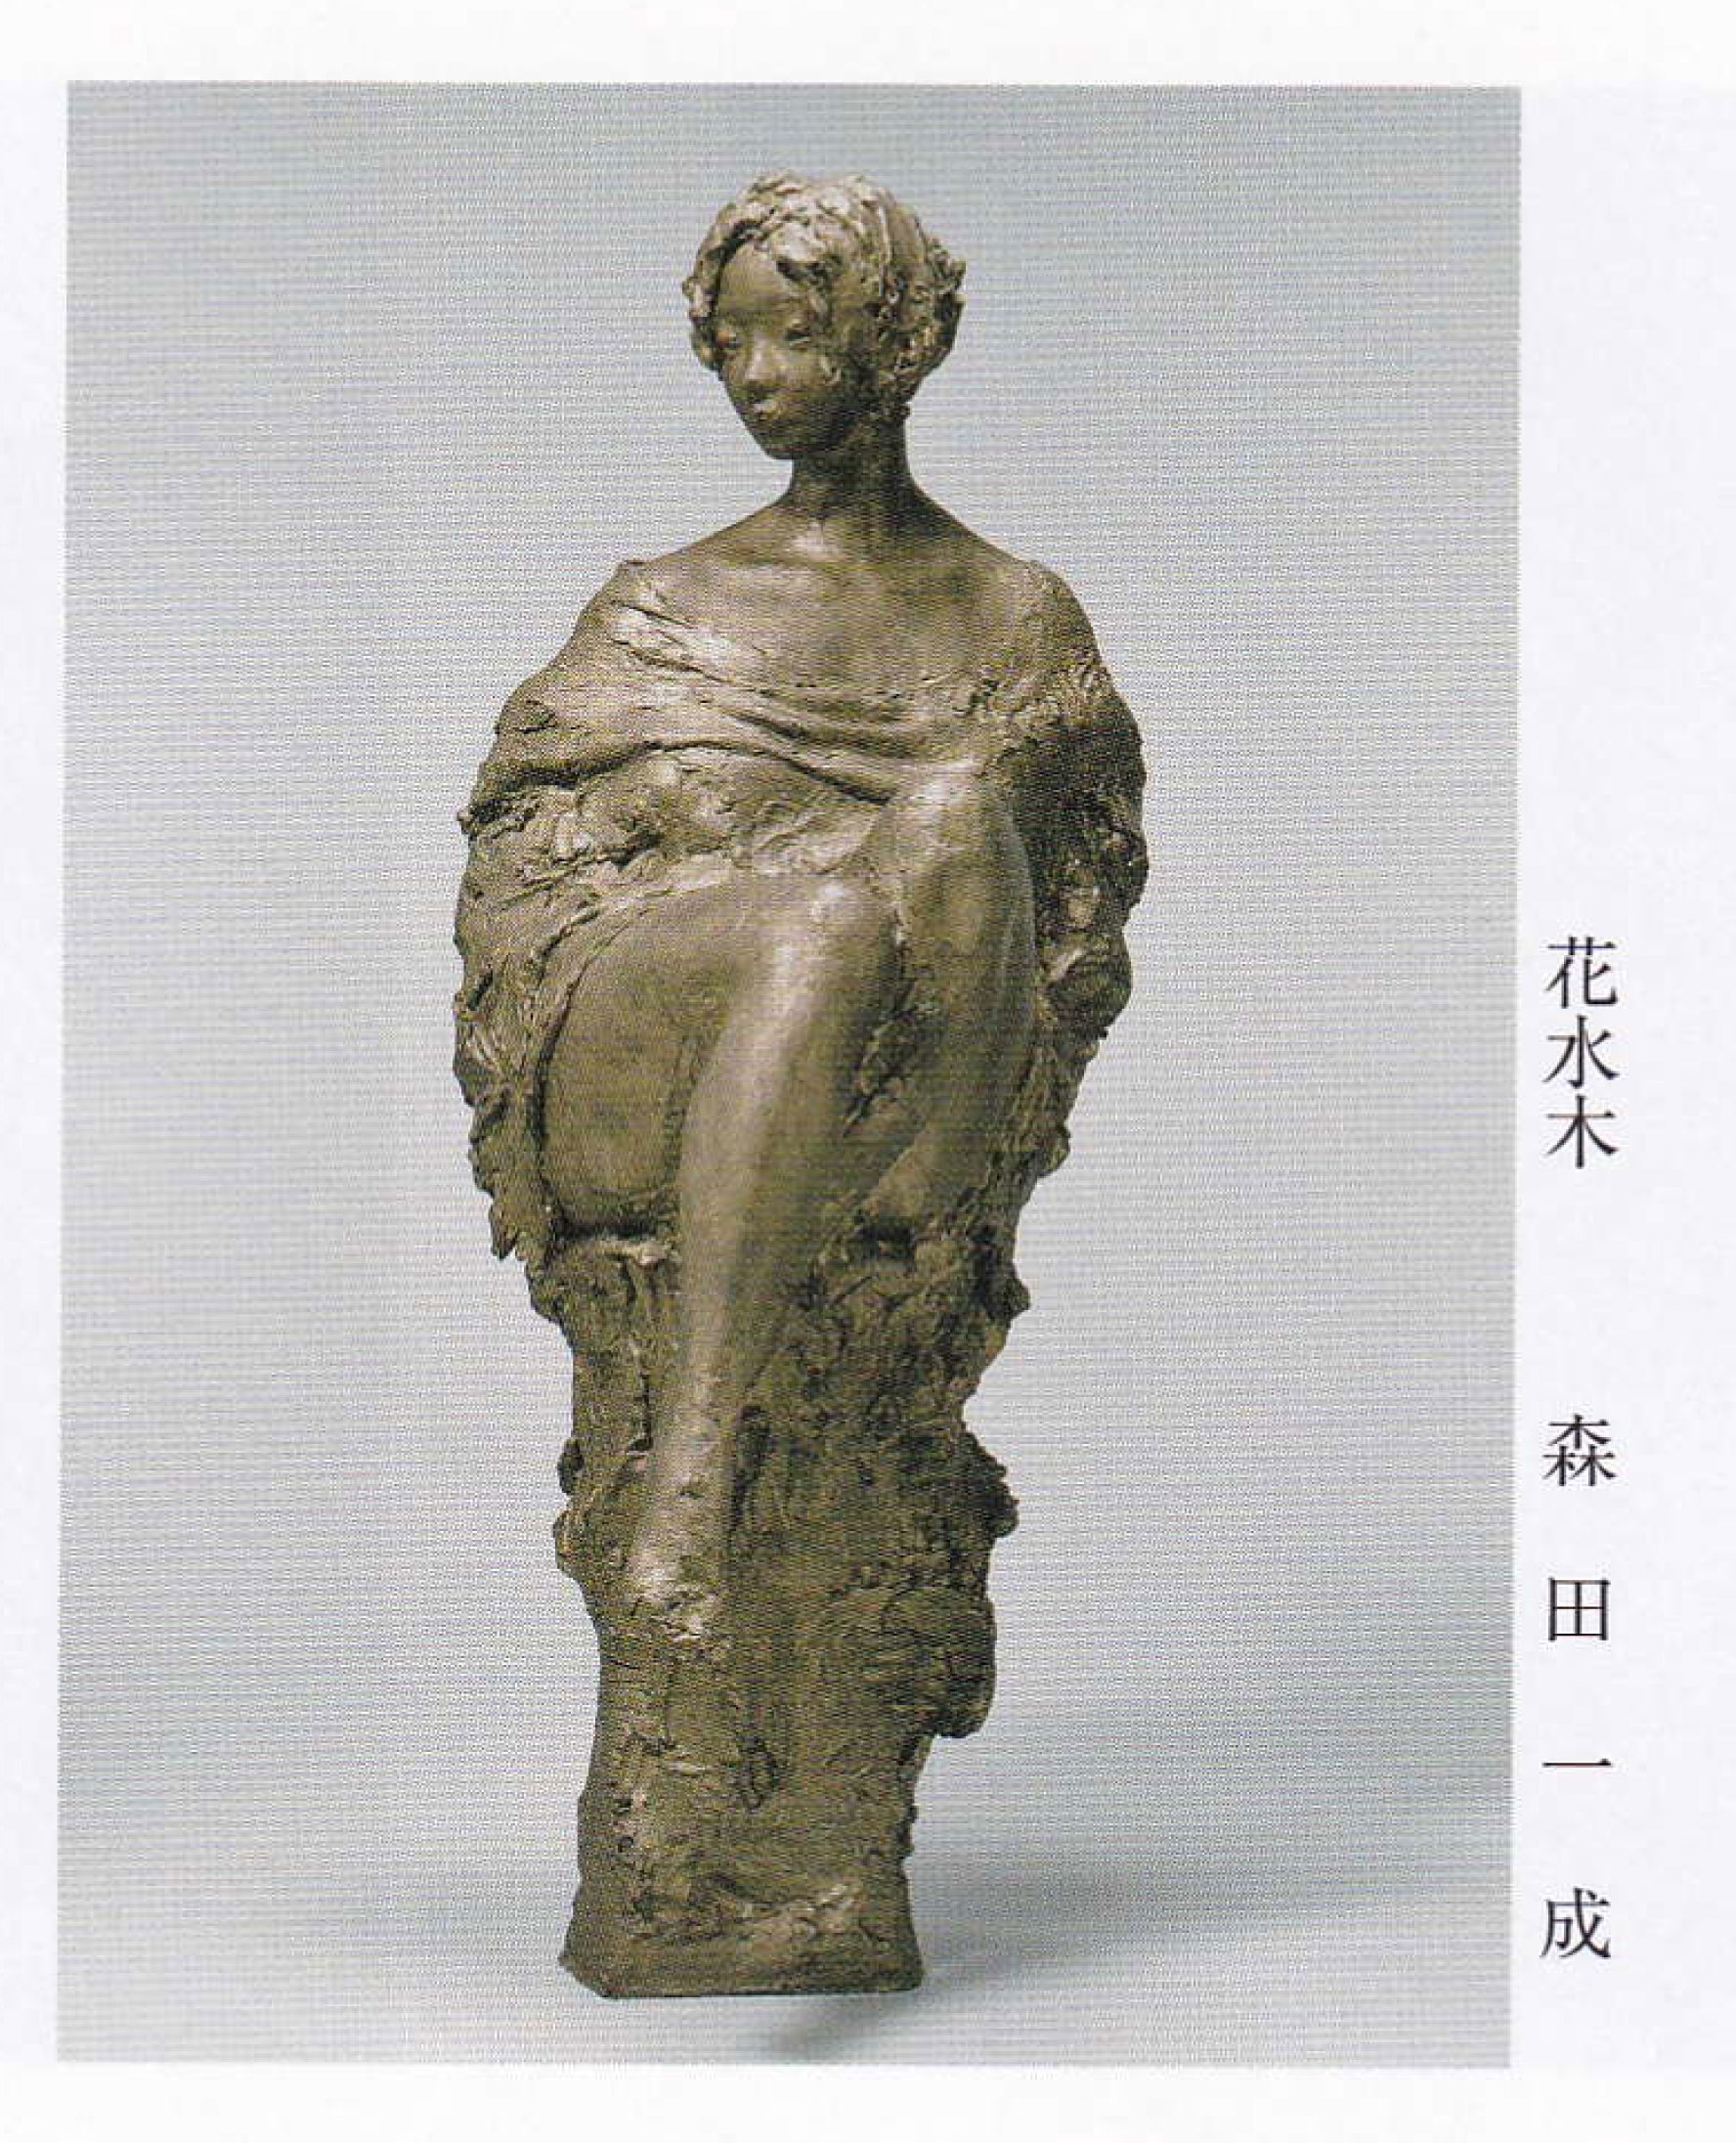 上品な慶應◆本物保証 日展特選彫刻家作 石膏彫塑 座る女 1 西洋彫刻